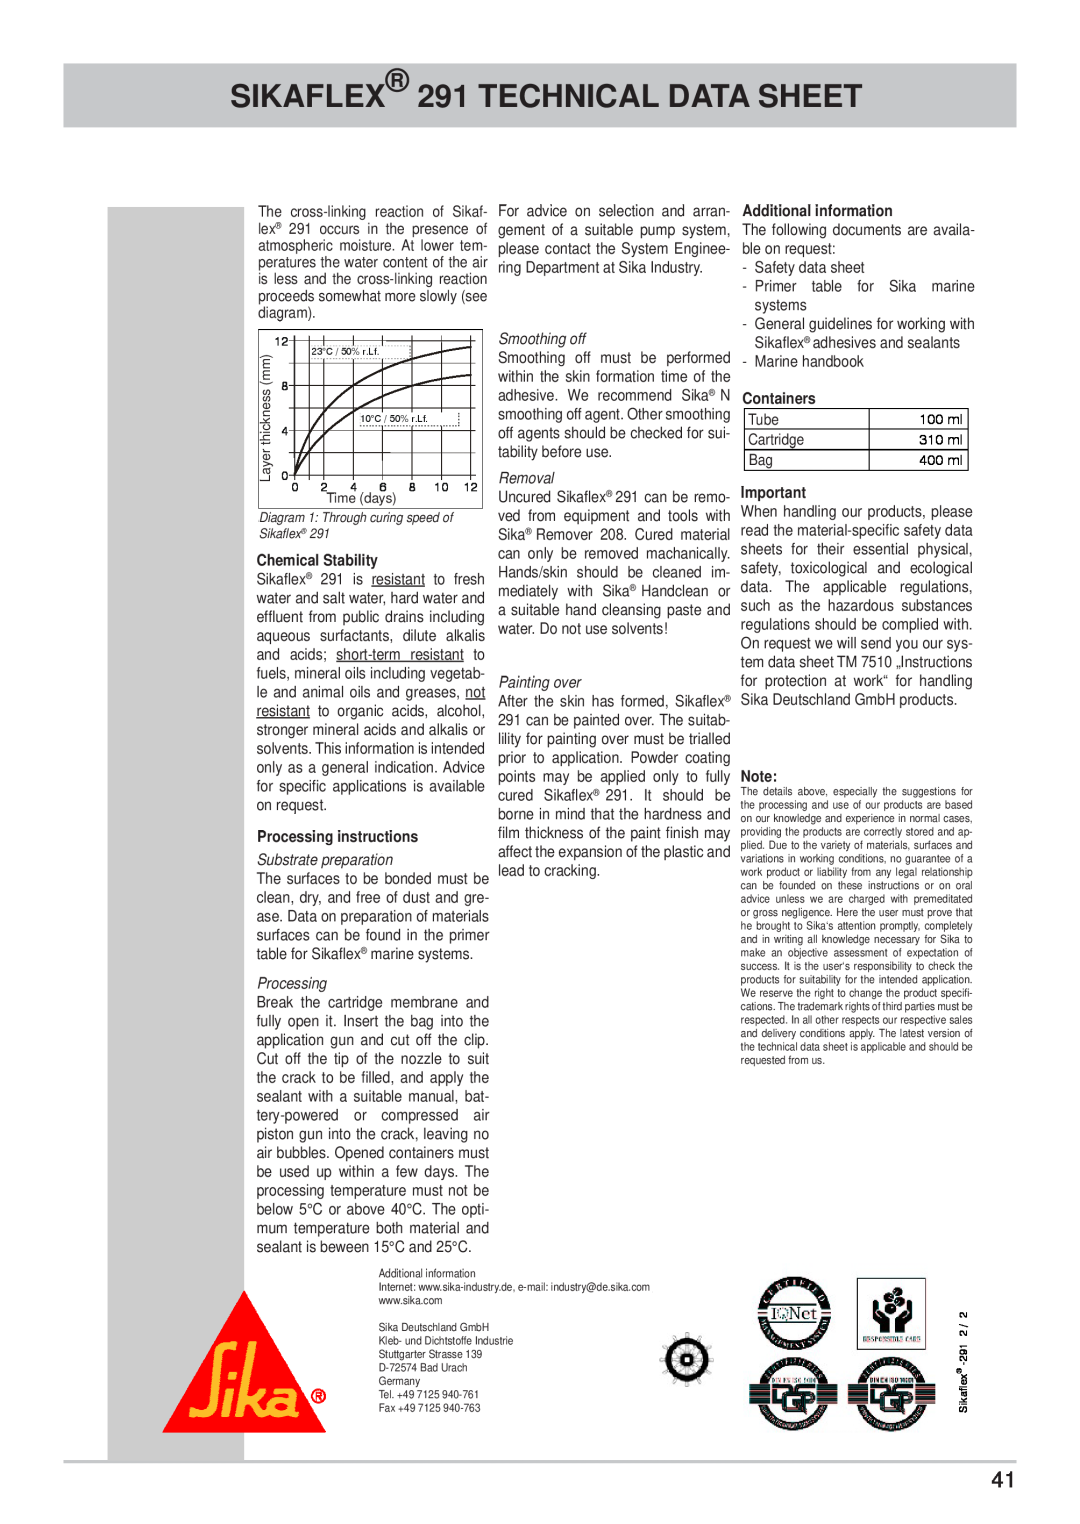 Kathrein CAP 700 SIKAFLEX 291 TECHNICAL DATA SHEET, diagramgramm, Chemical Stability, Chemische Beständigkeit, systems 